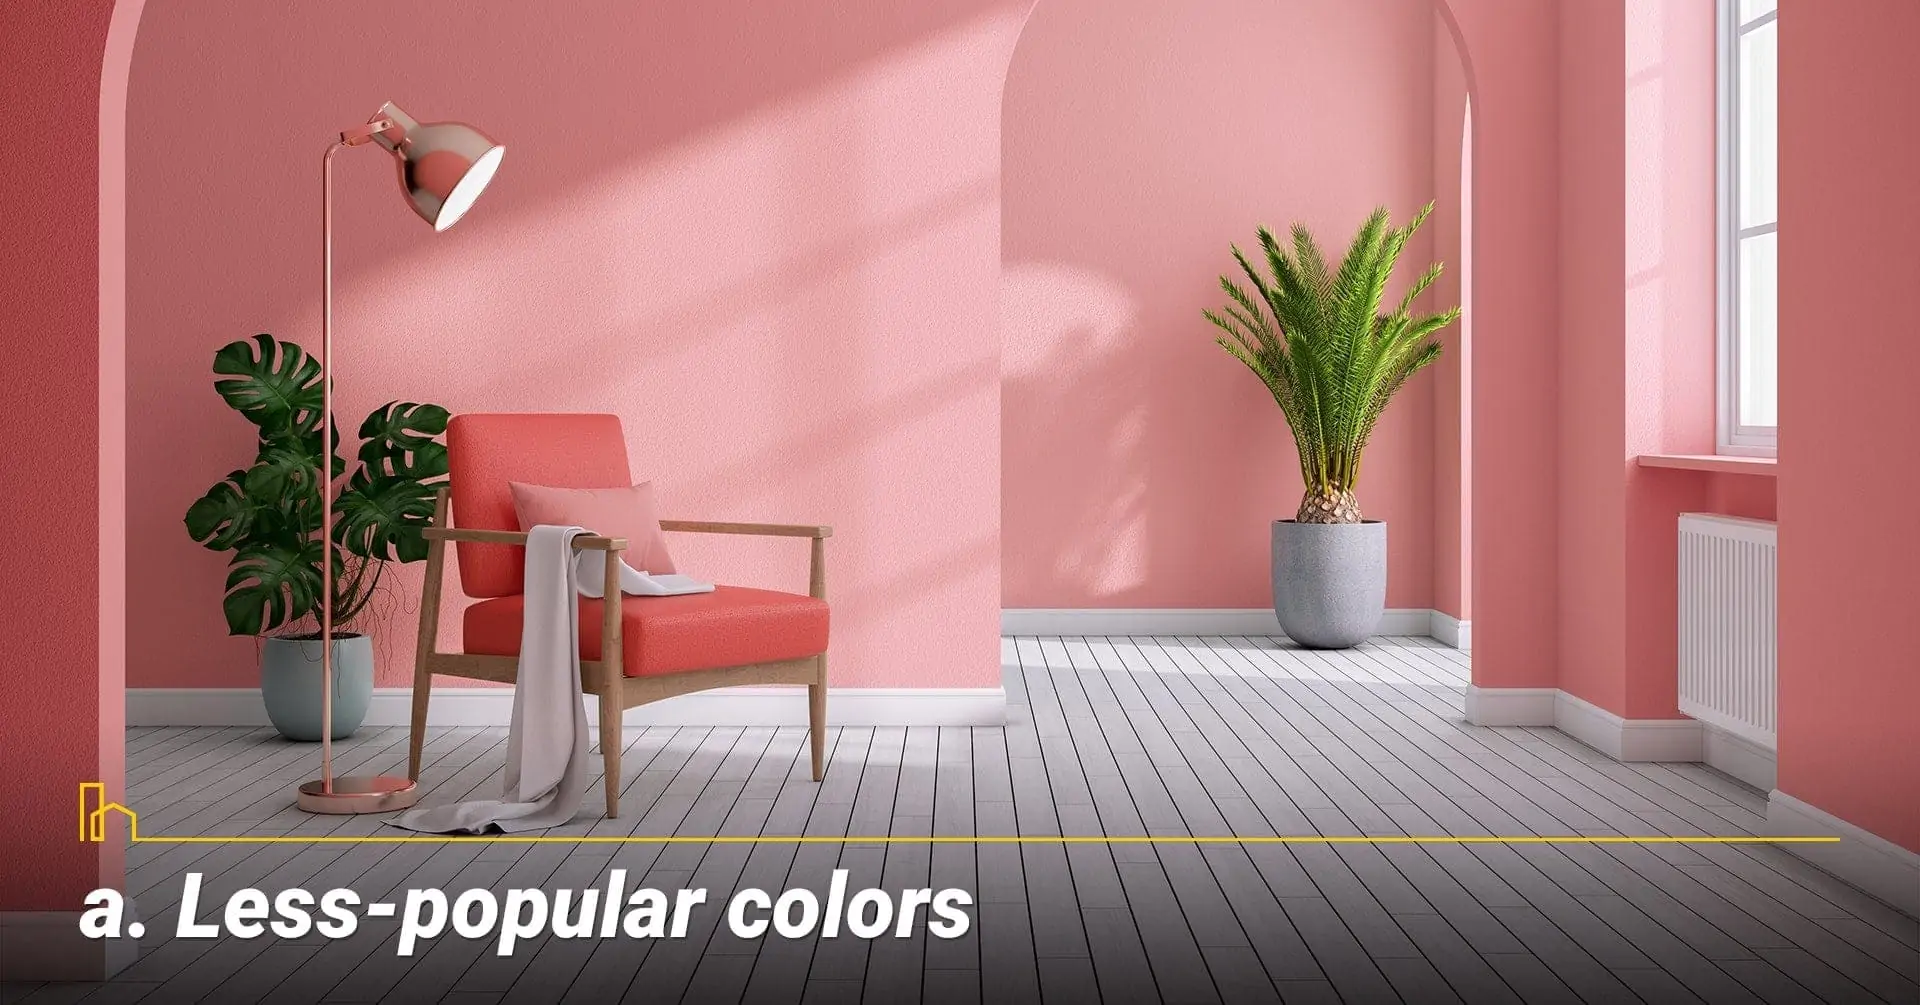 Less-popular colors, un-popular colors